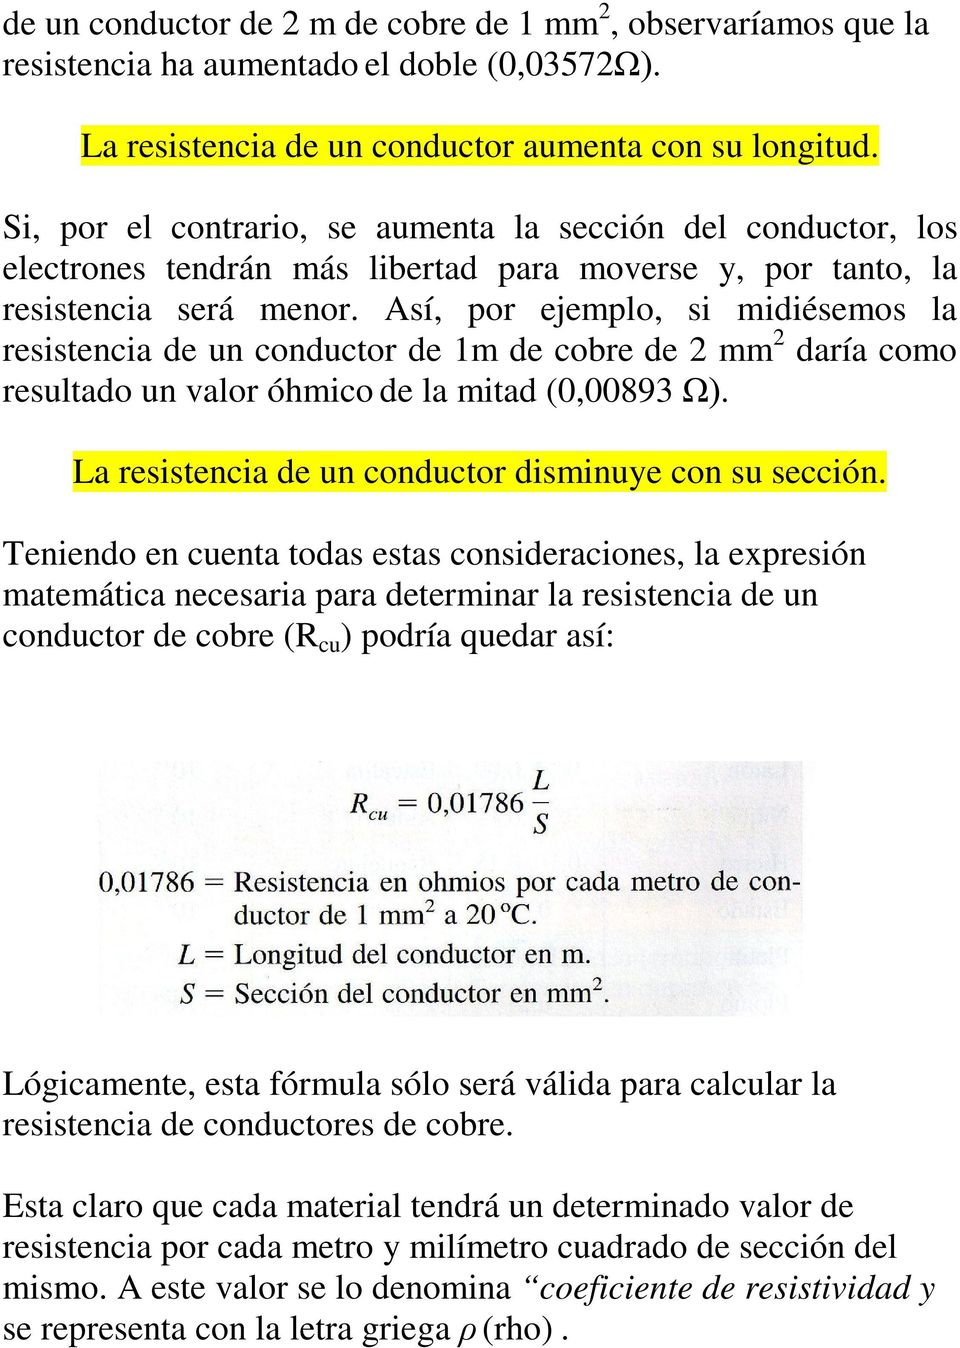 Así, por ejemplo, si midiésemos la resistencia de un conductor de 1m de cobre de 2 mm 2 daría como resultado un valor óhmico de la mitad (0,00893 Ω).